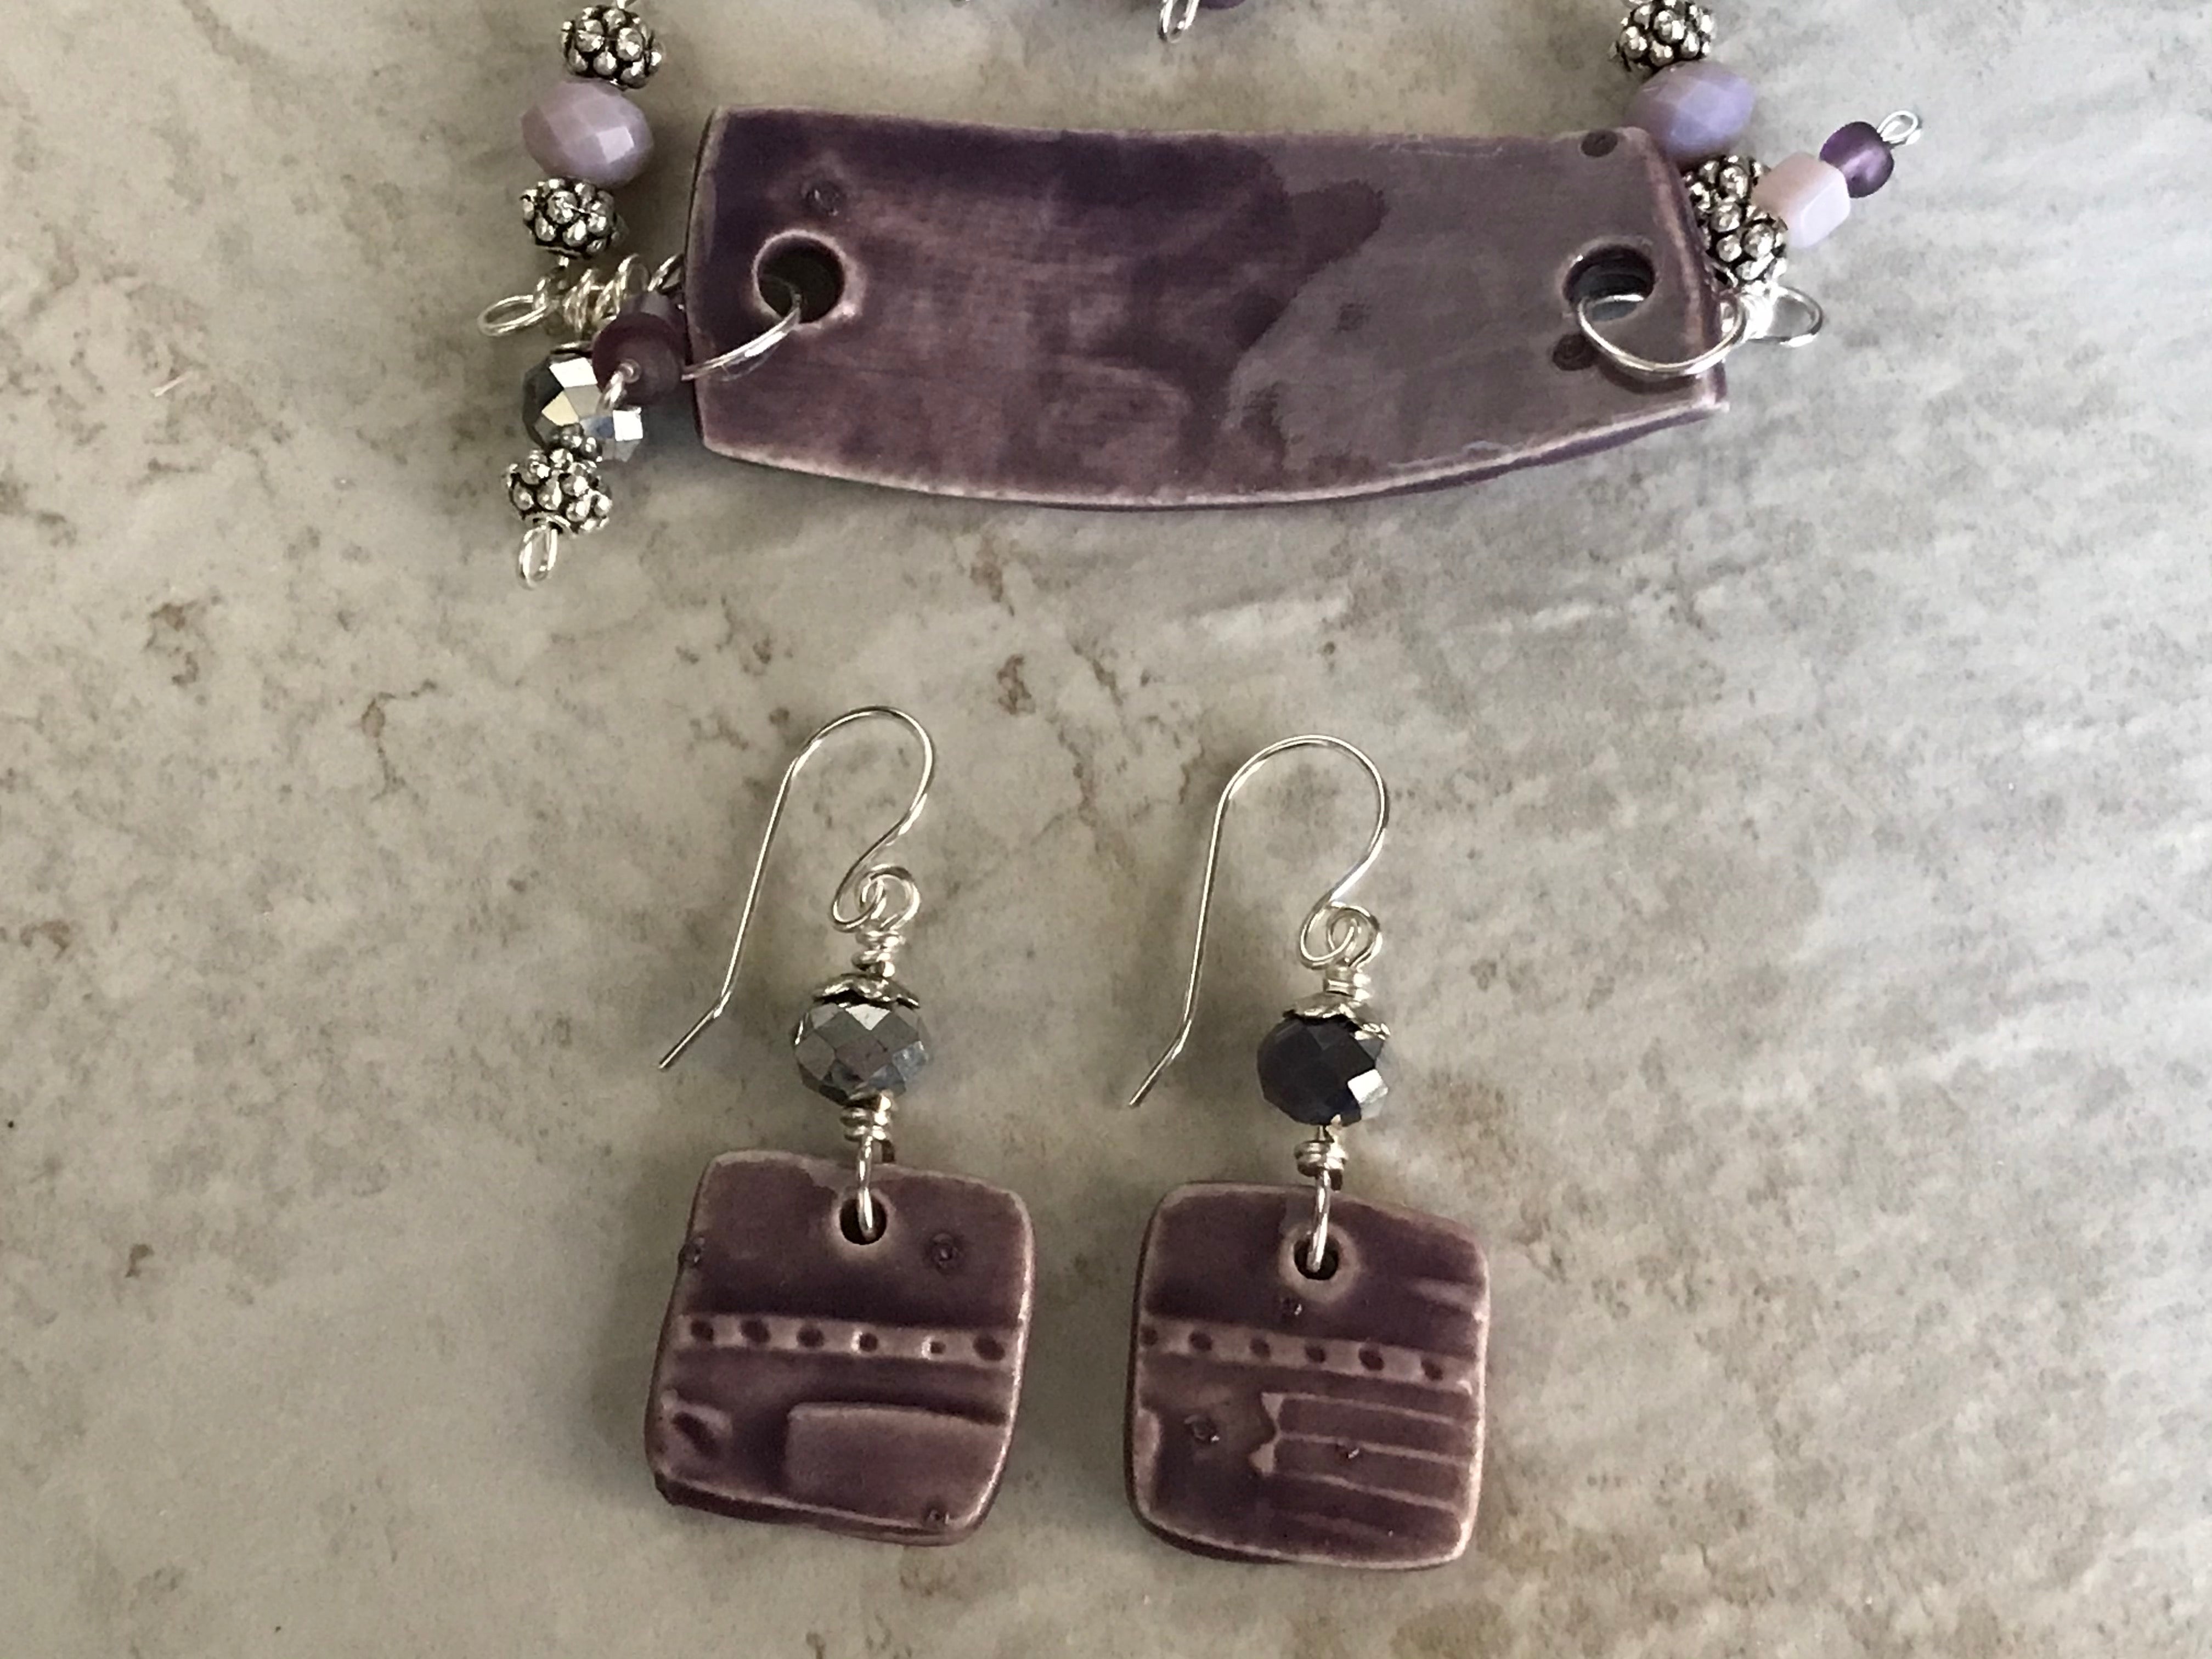 Bracelet and Earrings, Beaded Purple Bracelet and Earrings, Charm Bracelet Set, Jewelry Set